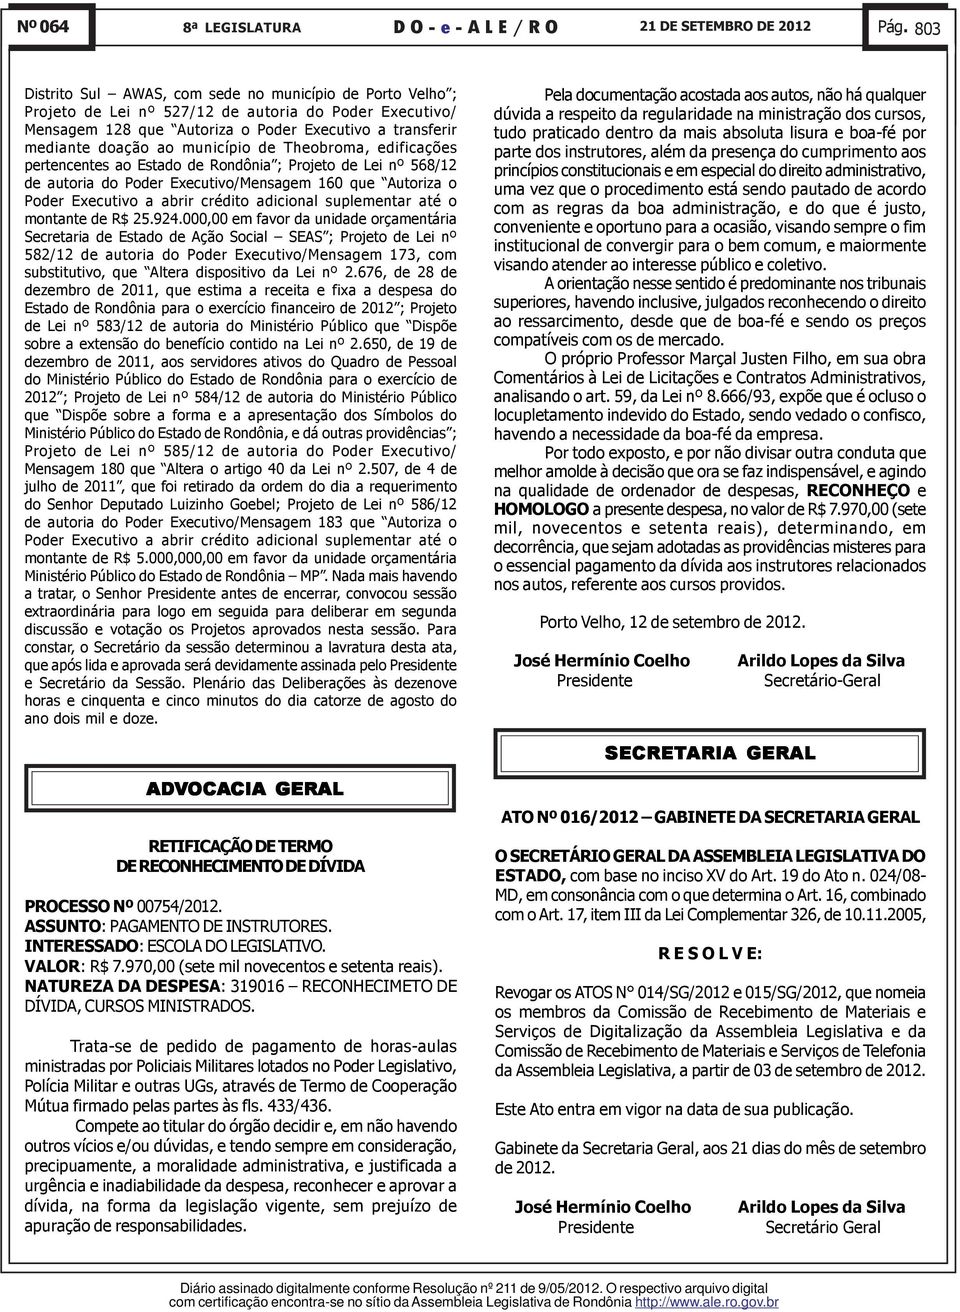 município de Theobroma, edificações pertencentes ao Estado de Rondônia ; Projeto de Lei nº 568/12 de autoria do Poder Executivo/Mensagem 160 que Autoriza o Poder Executivo a abrir crédito adicional